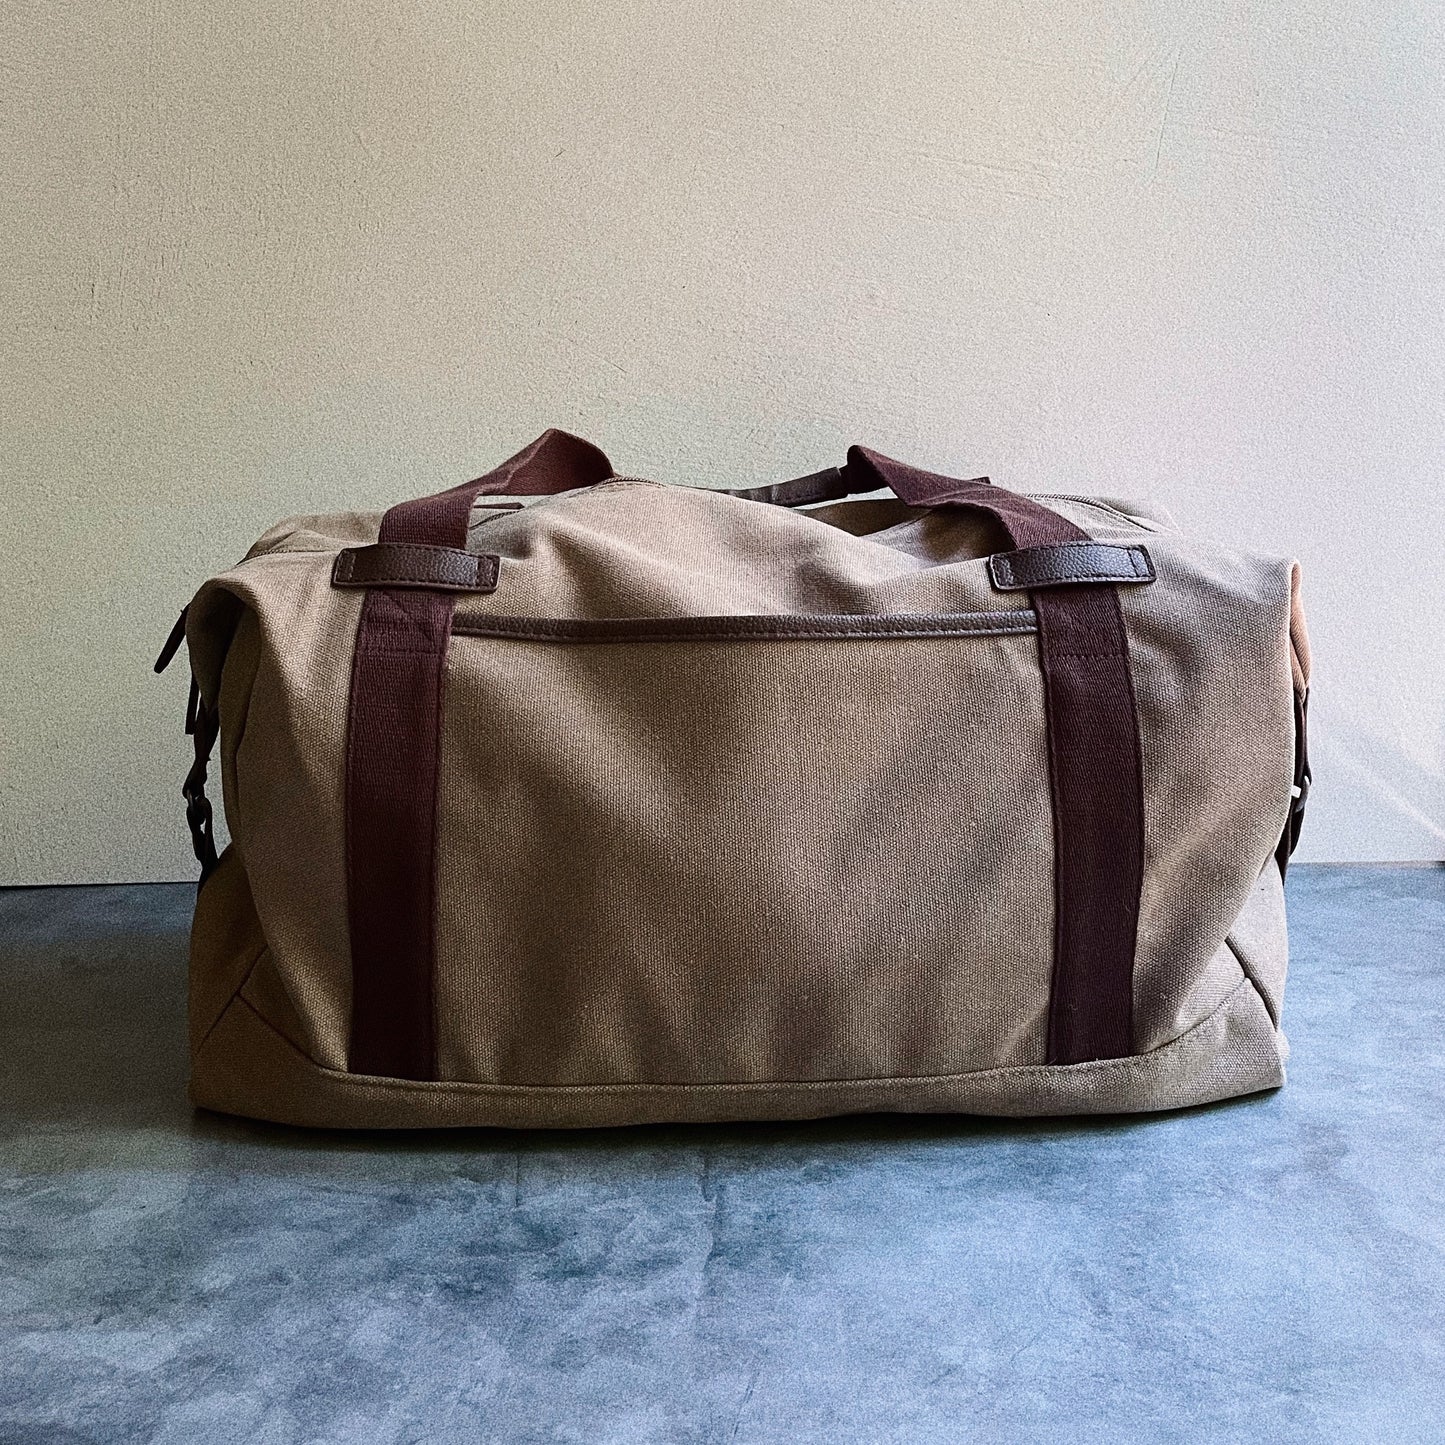 The Déjà Vu Duffle Bag (May 6th Pre-Order)